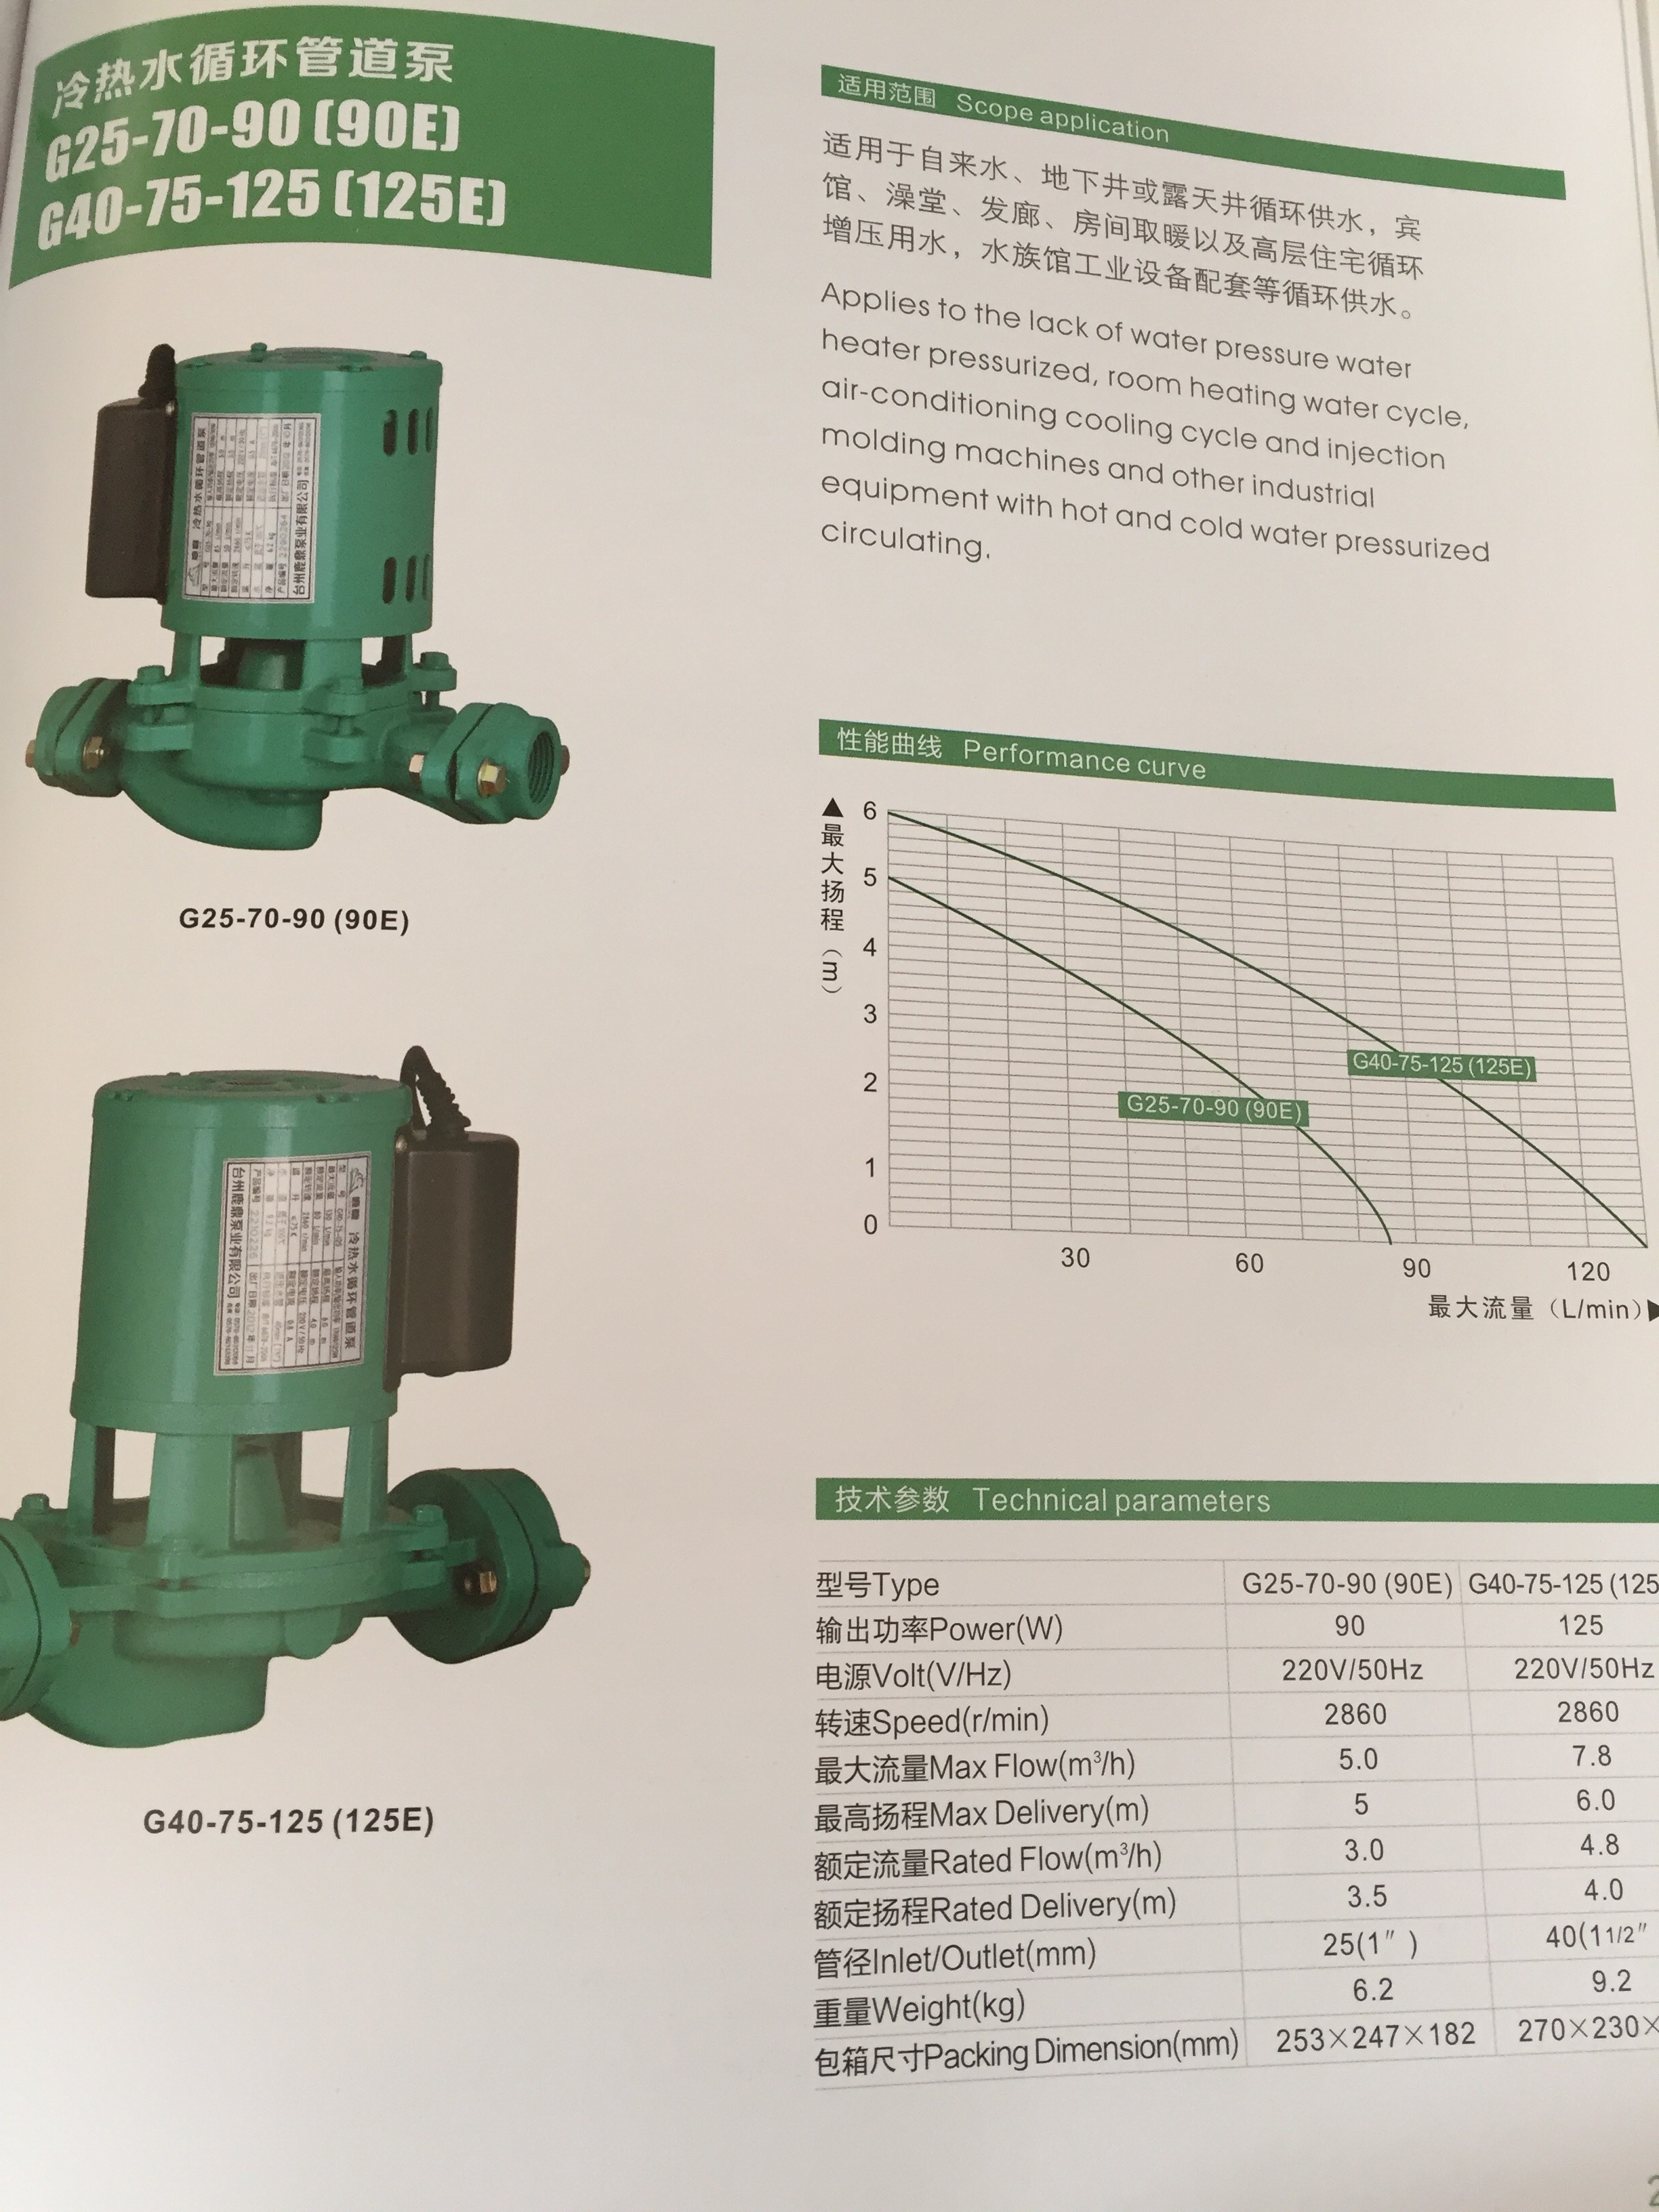 鹿鼎G25-70-90(90E)冷热水循环管道泵(90W)